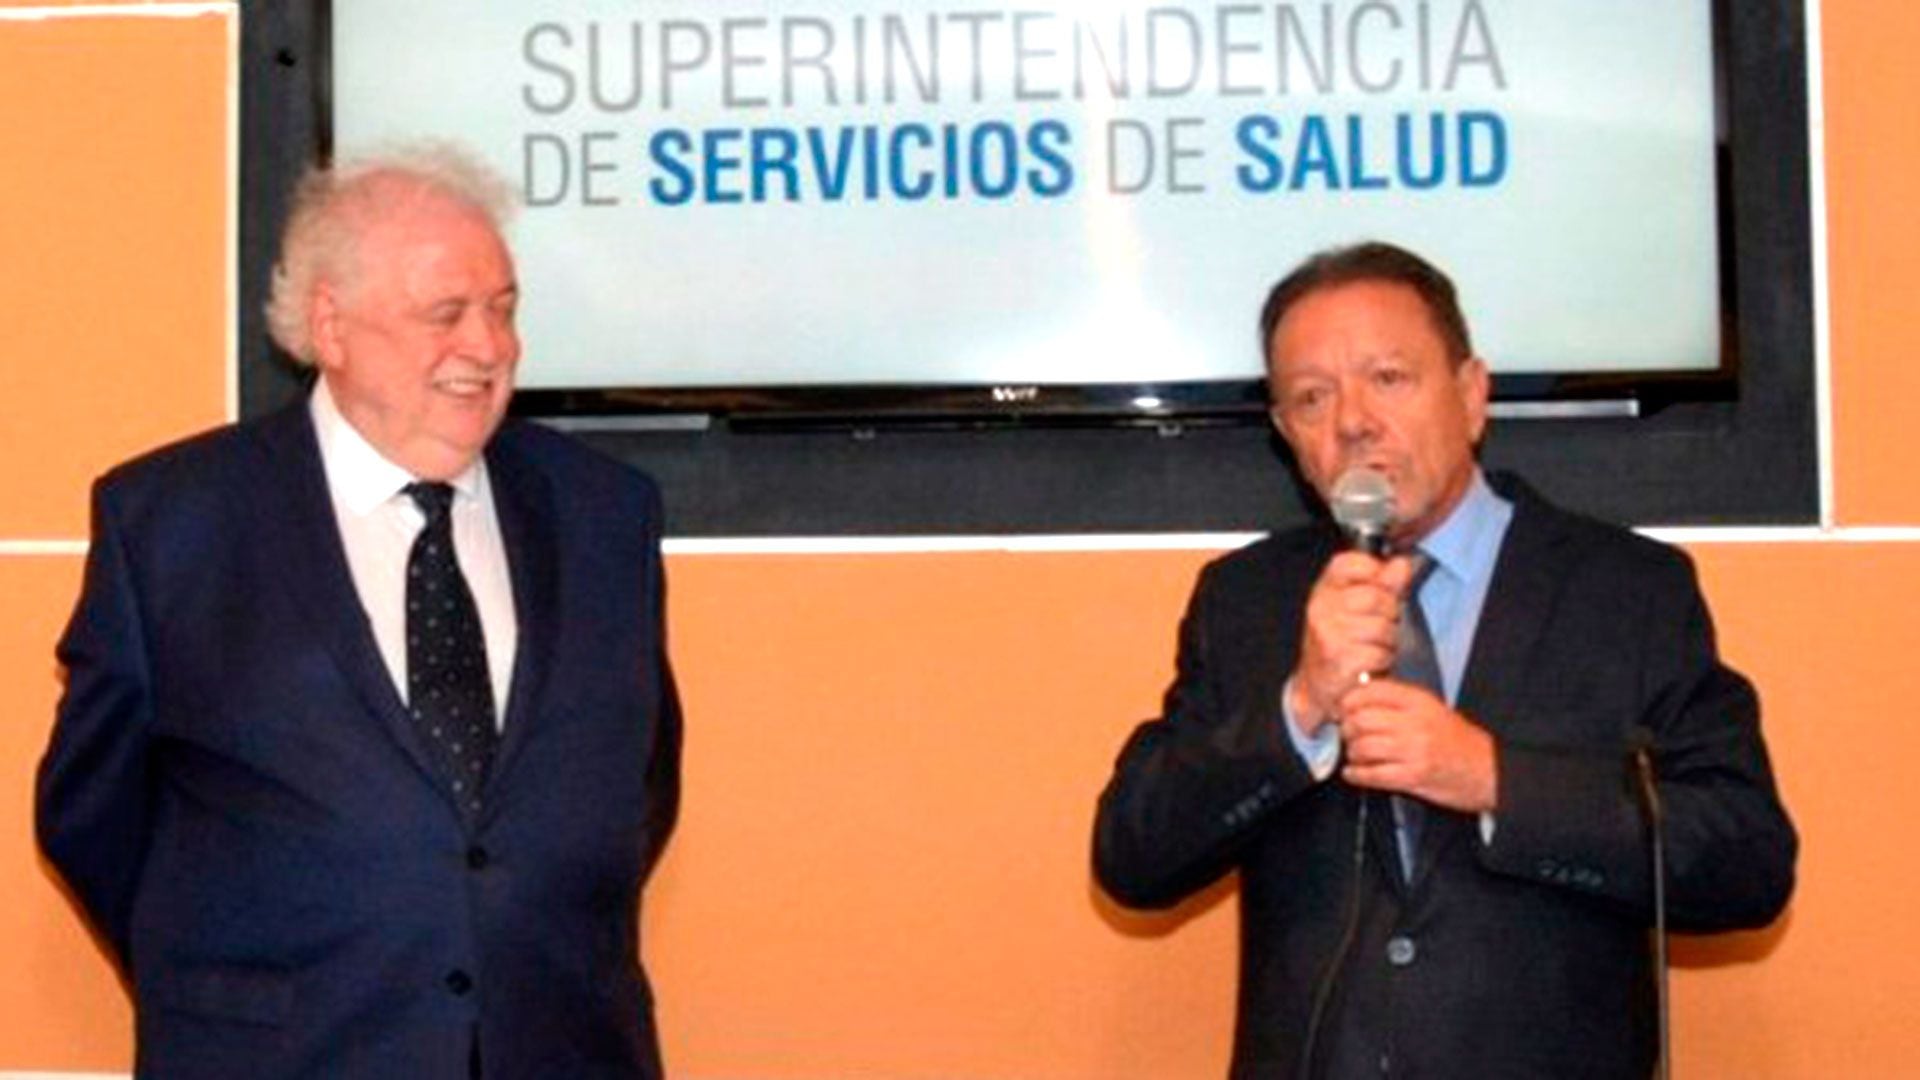 El-ministro-Gines-Gonzalez-Garcia-y-el-titular-de-la-Superintendencia-de-Servicios-de-Salud-Eugenio-Zanarini